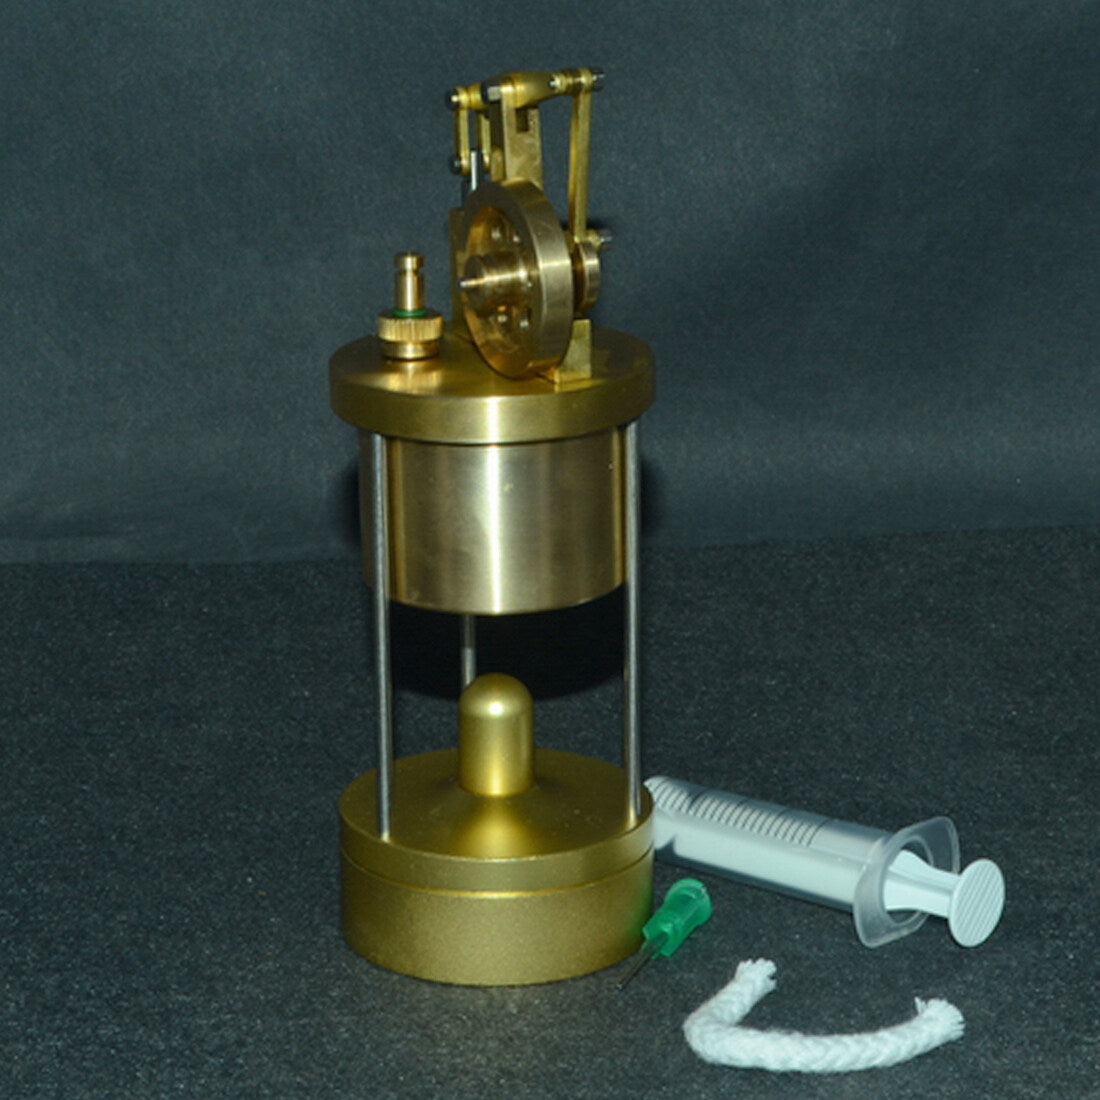 Microcosm M88 Metall Mini-Dampfmaschine Live-Dampfmaschinenmodell